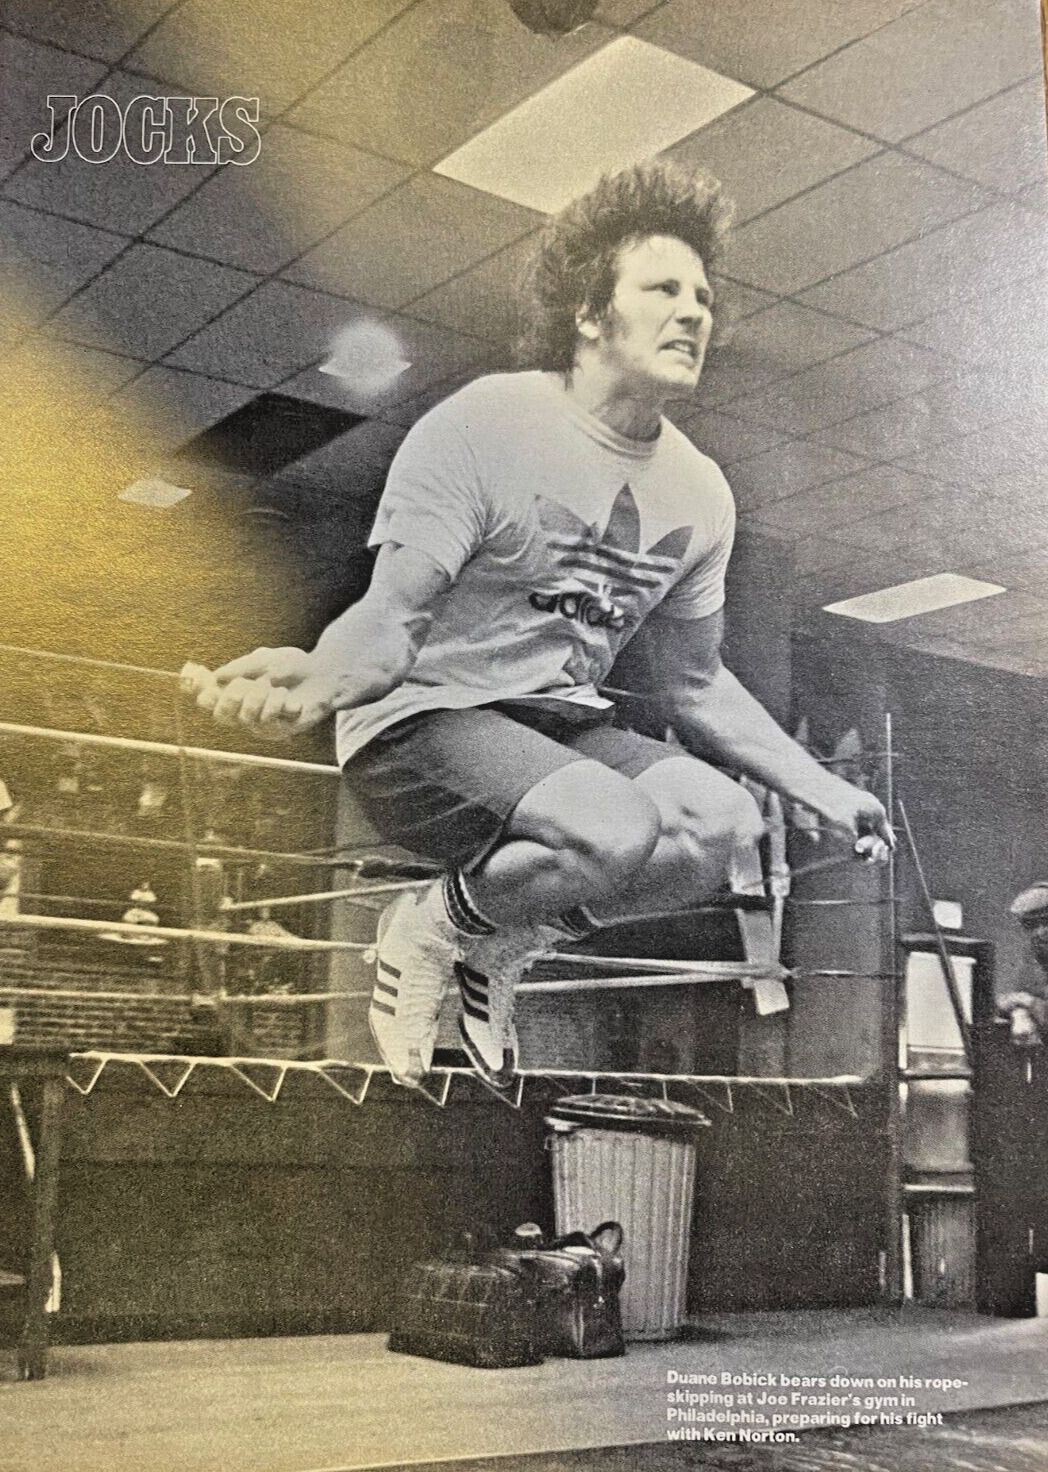 1977 Boxer Duane Bobick